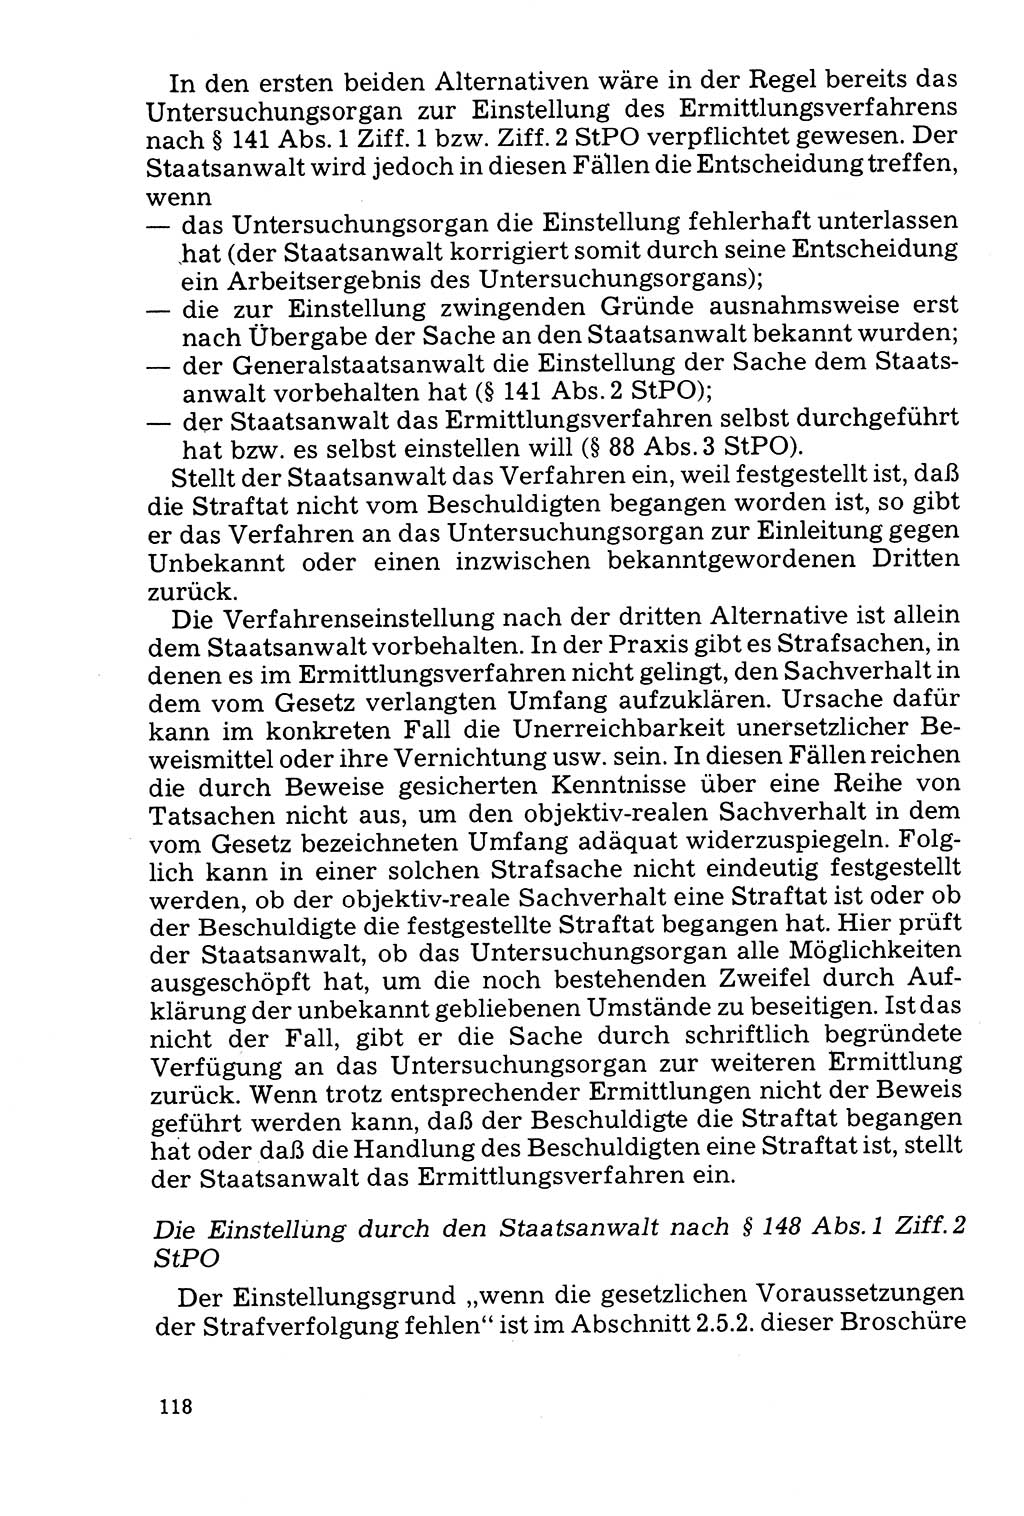 Der Abschluß des Ermittlungsverfahrens [Deutsche Demokratische Republik (DDR)] 1978, Seite 118 (Abschl. EV DDR 1978, S. 118)